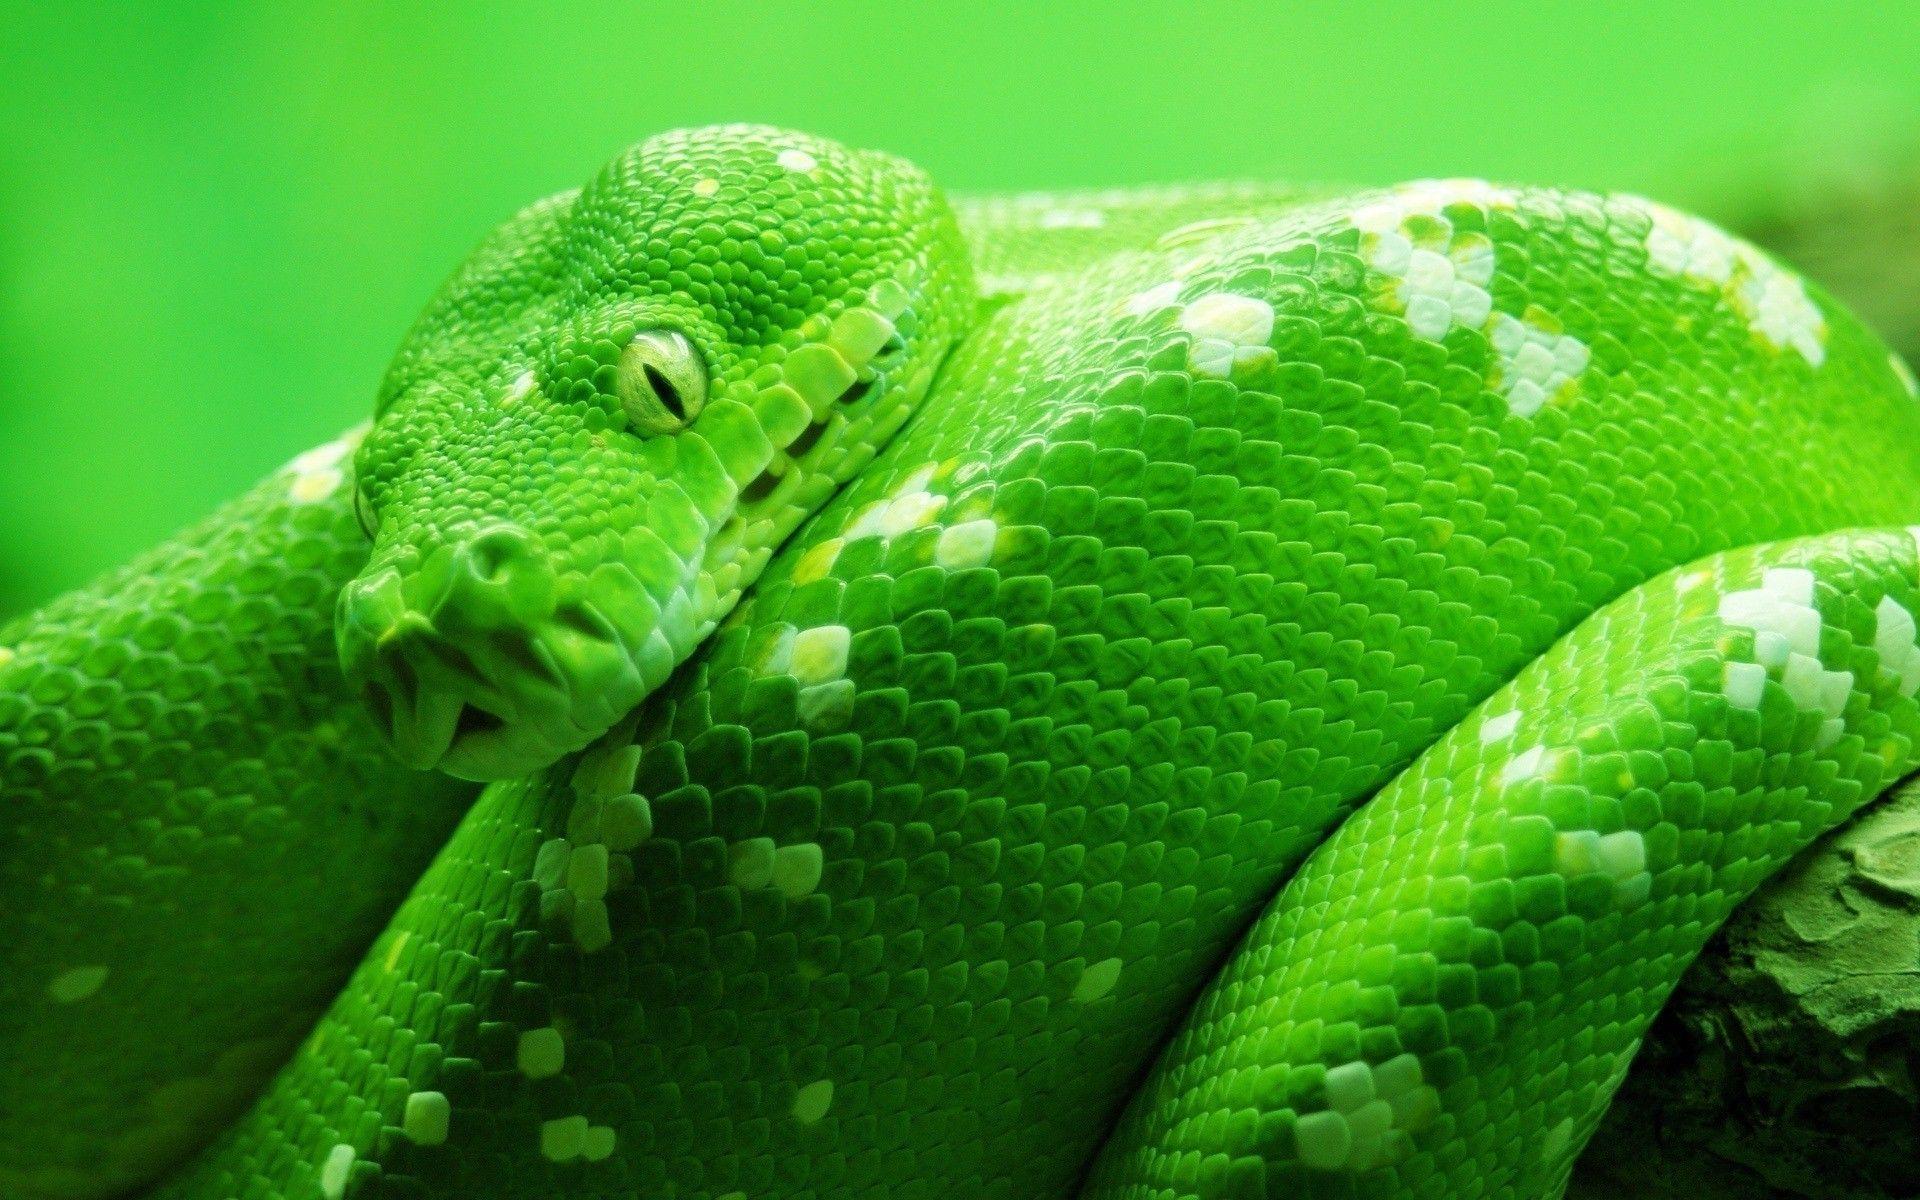 Green snake ultra HD wallpapers | Pxfuel